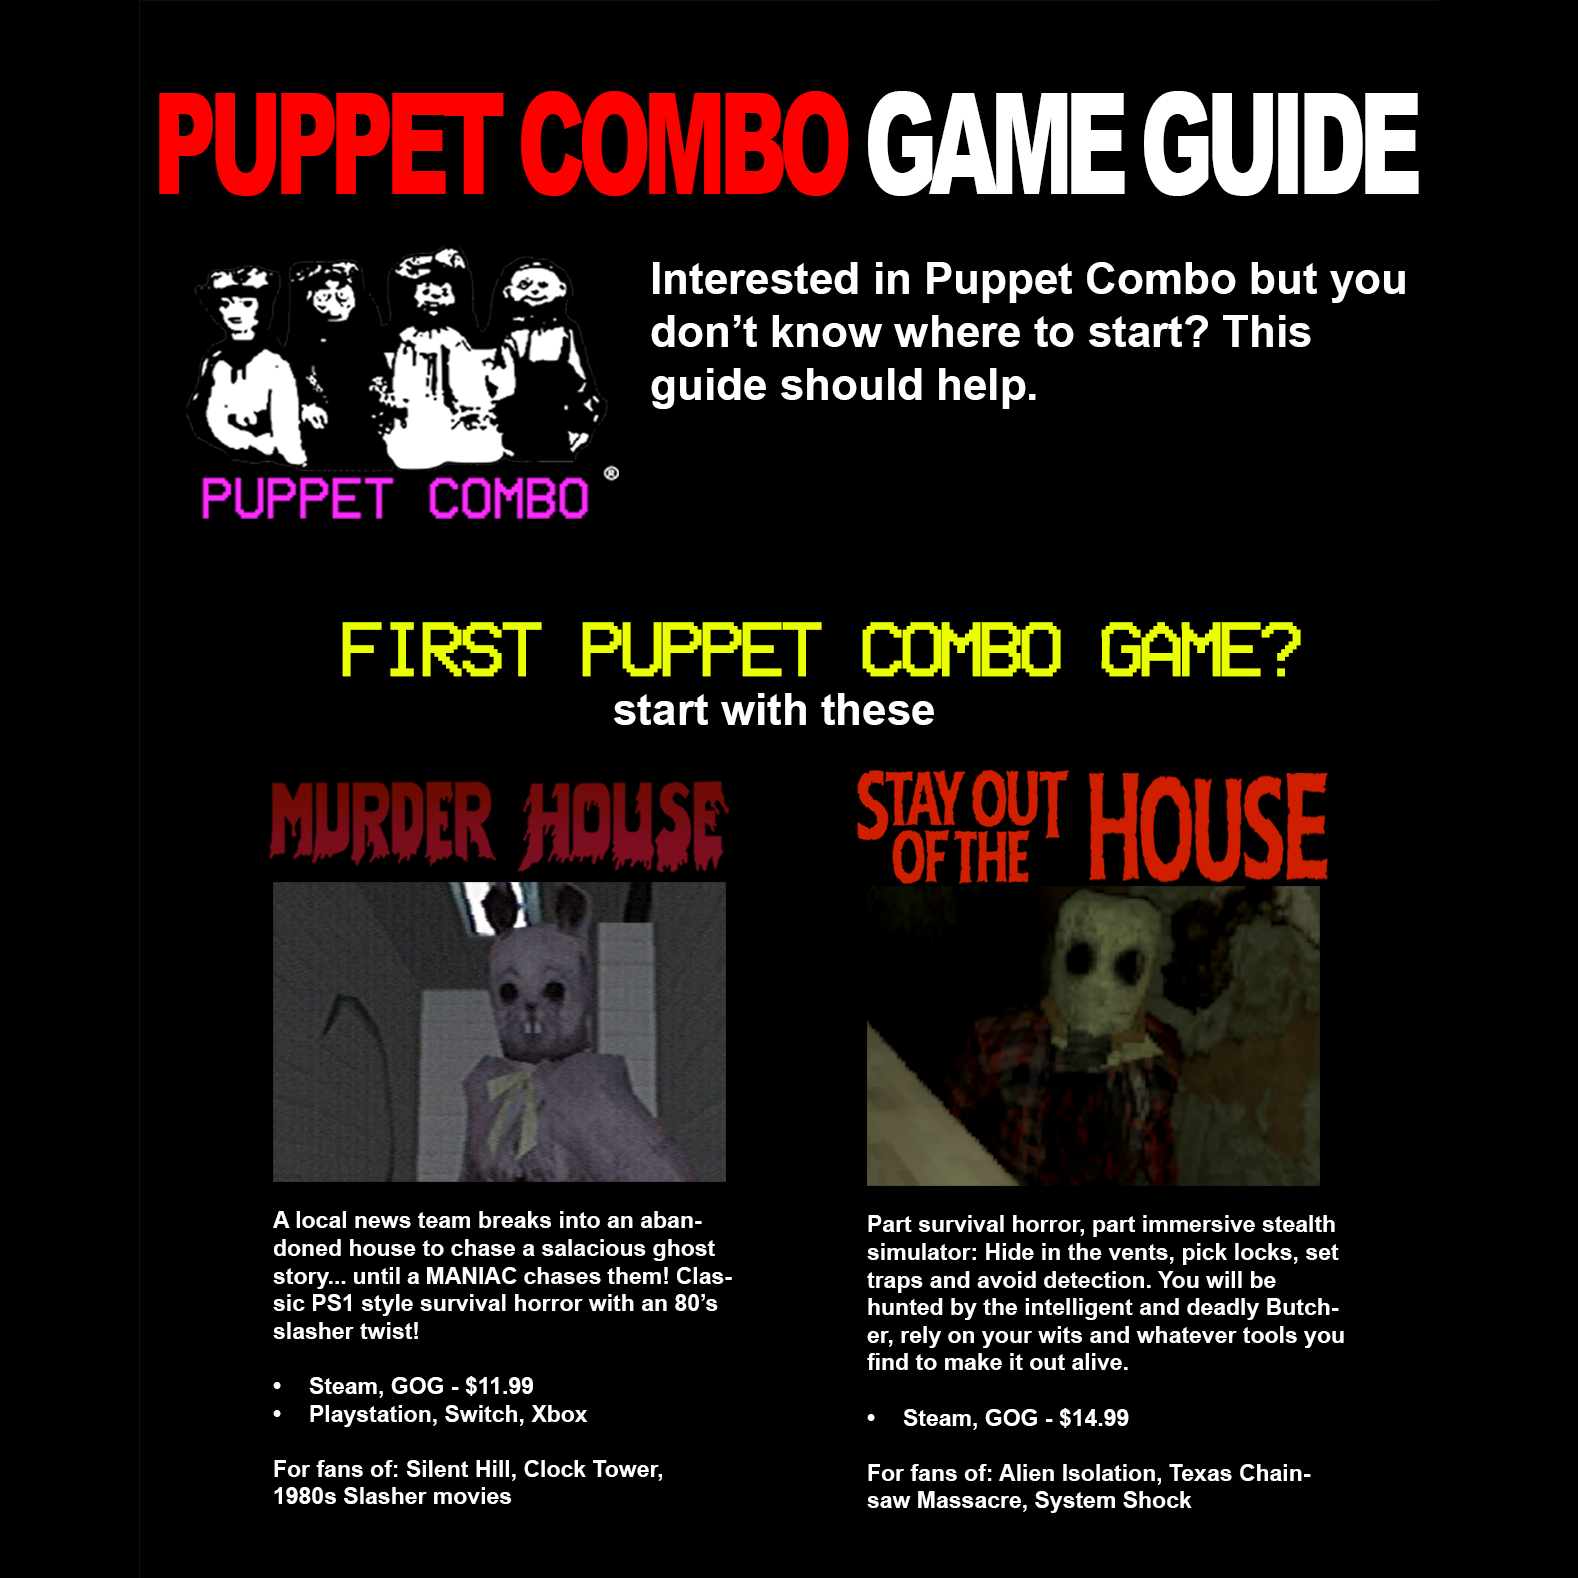 Puppet Combo VHS logo' T-shirt 